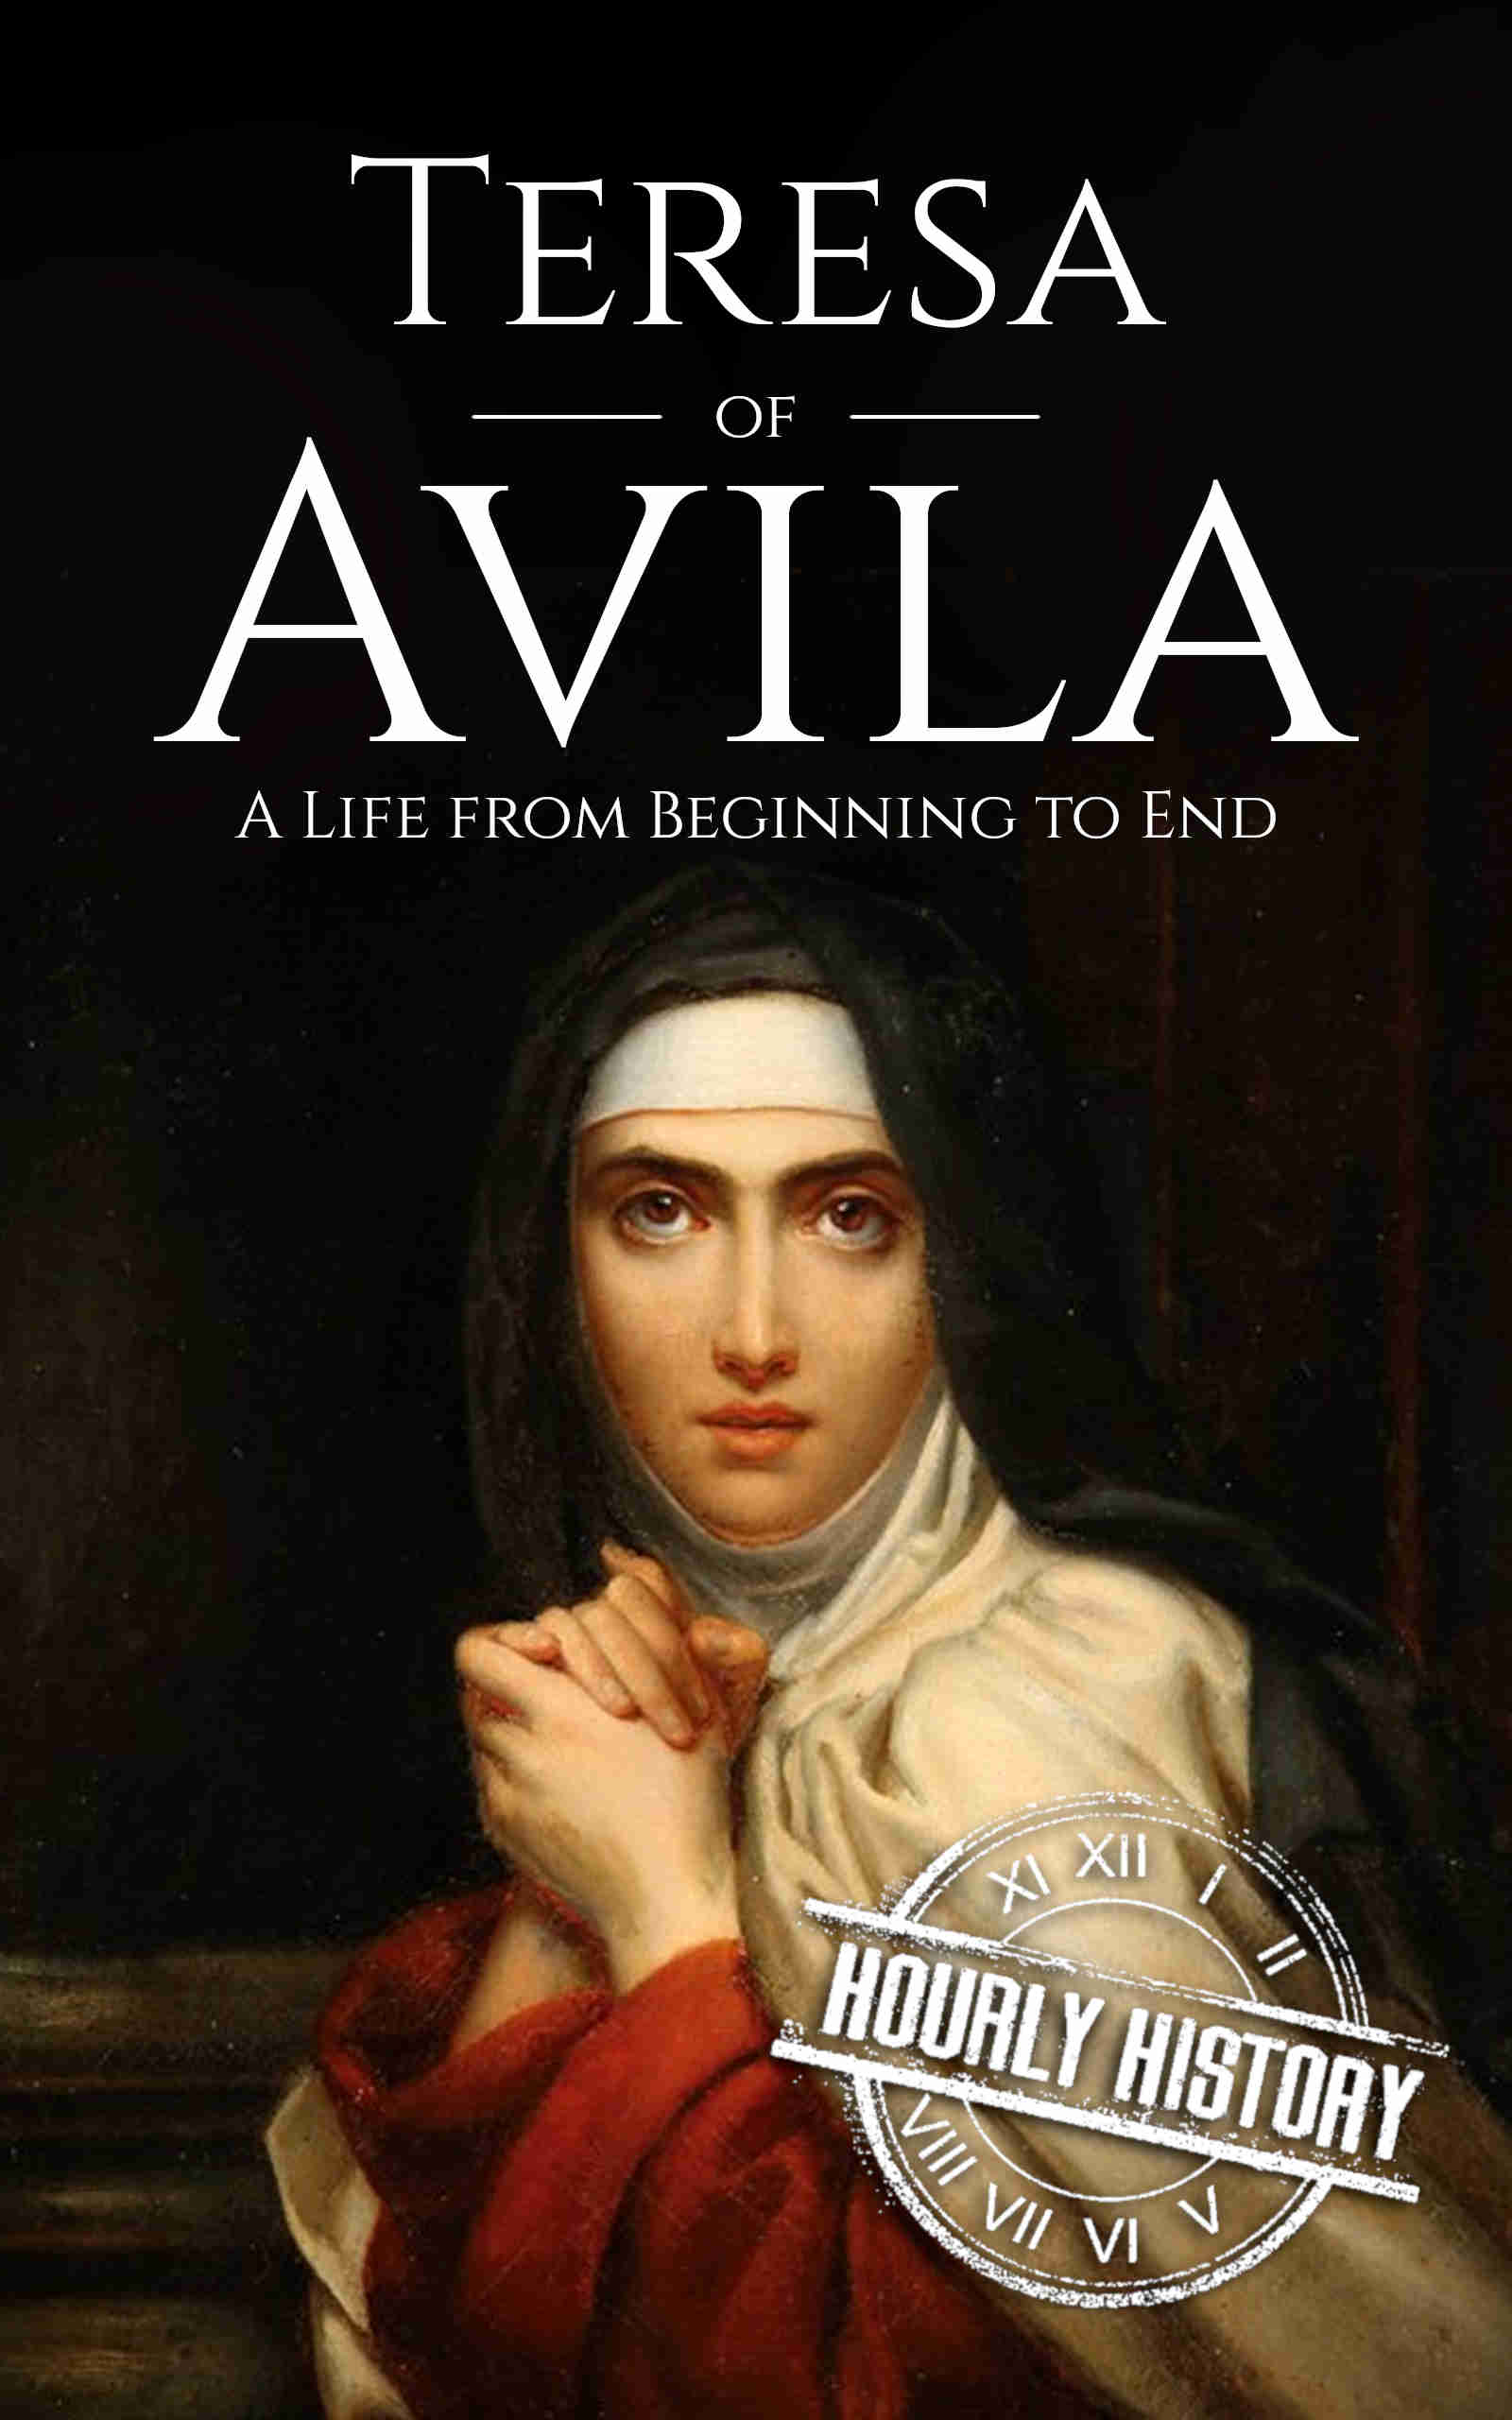 Book cover for Teresa of Avila